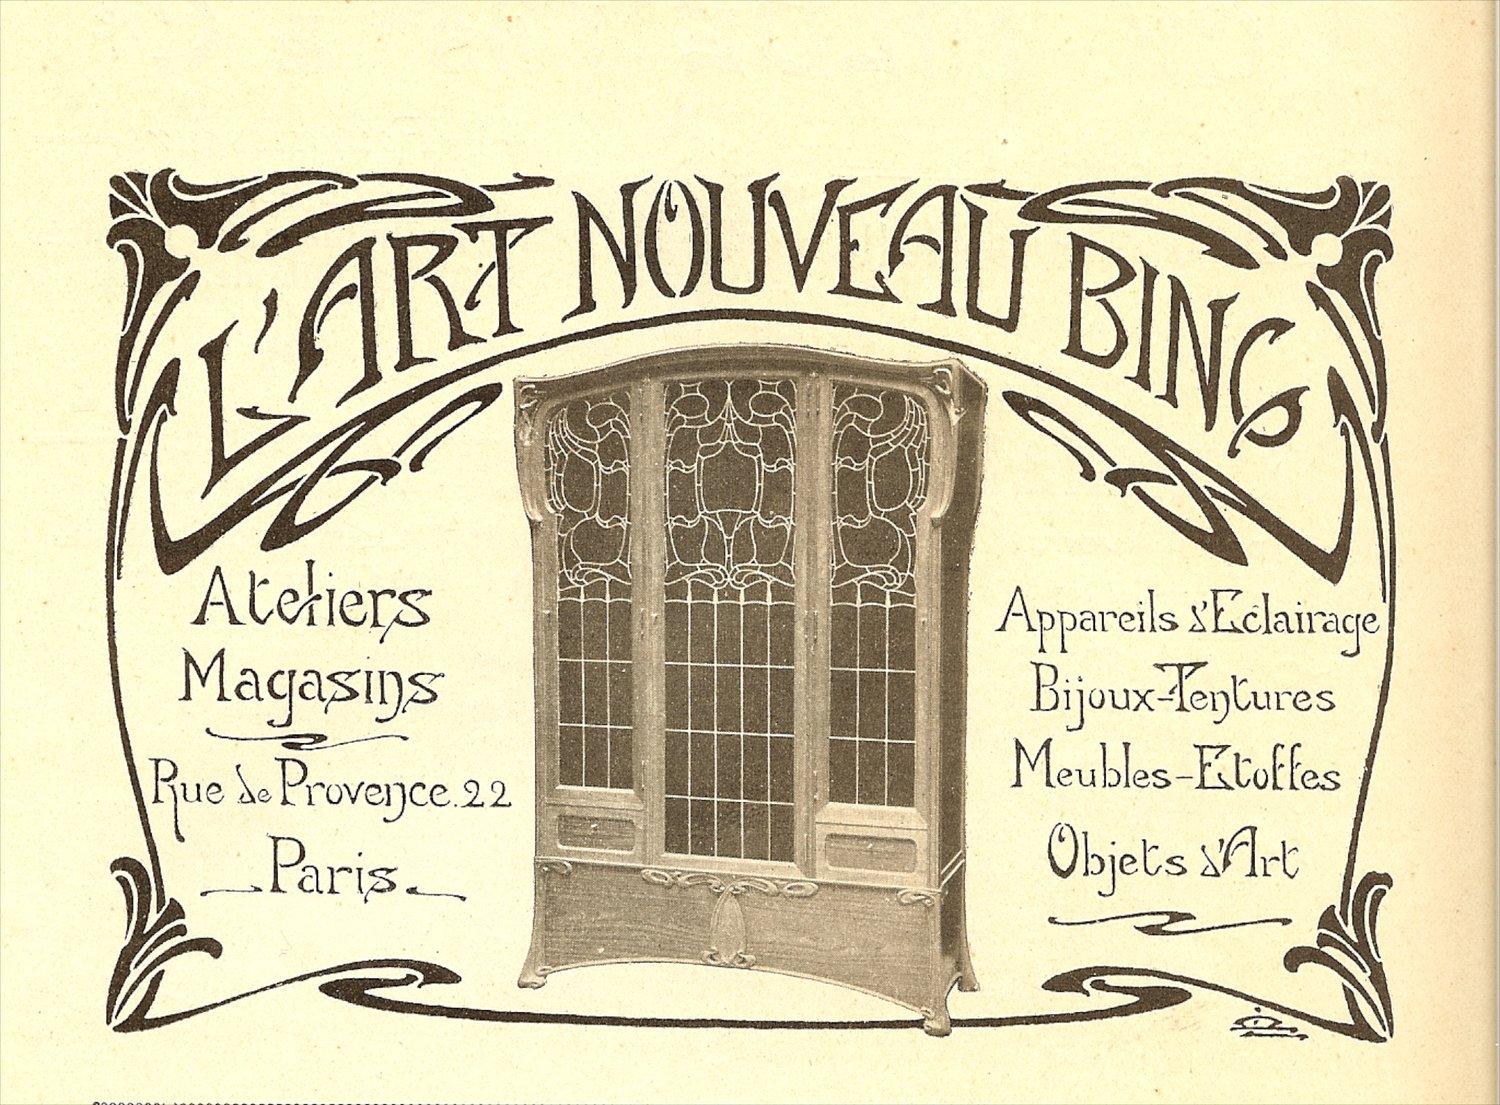 Table Maison L'art Nouveau, Bing Atelier Magasins, Siegfried Bing, Art Nouveau en vente 2